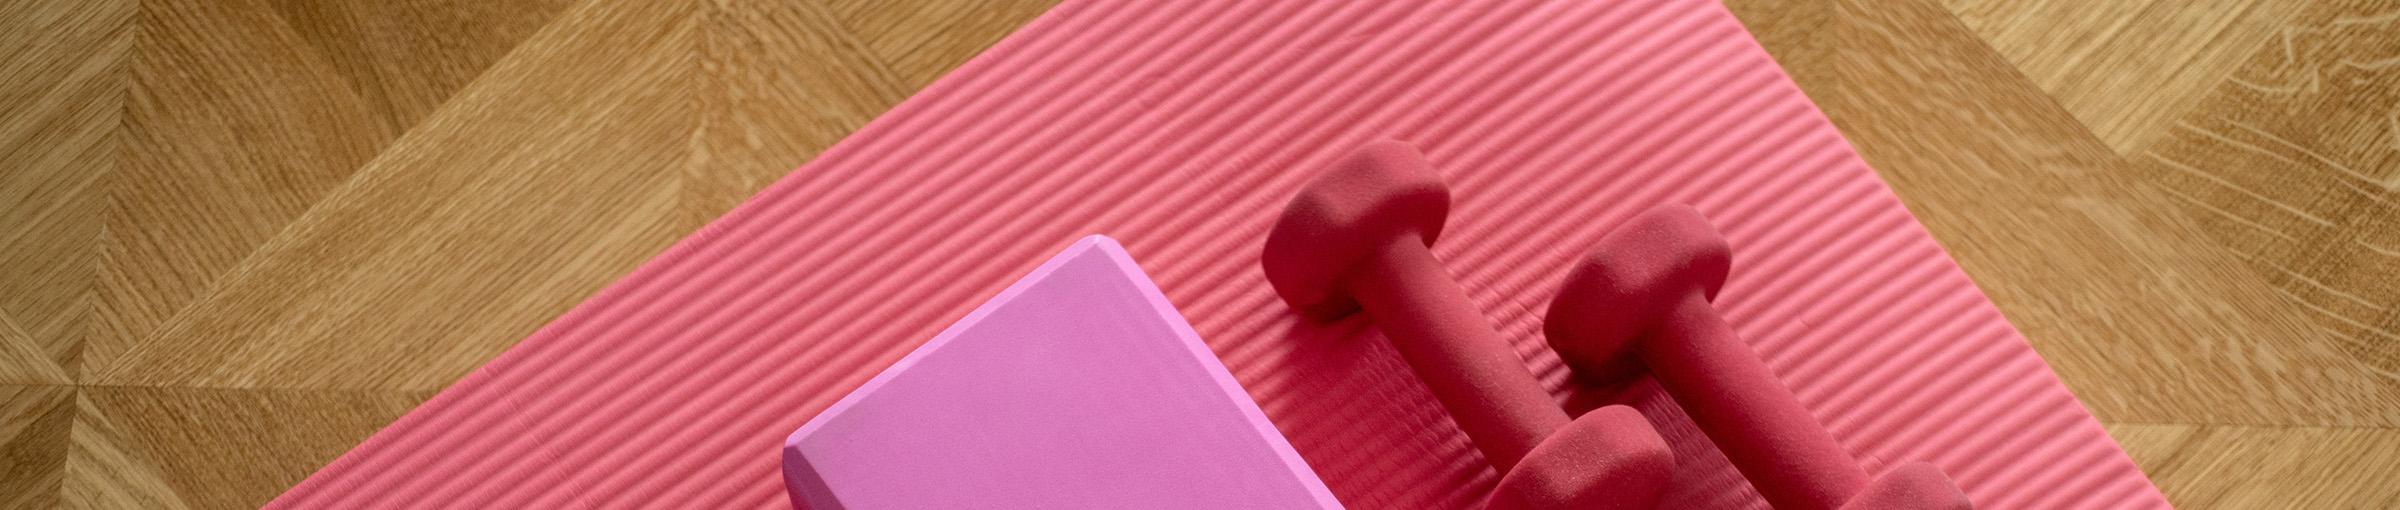 Pink dumb bells and yoga mat